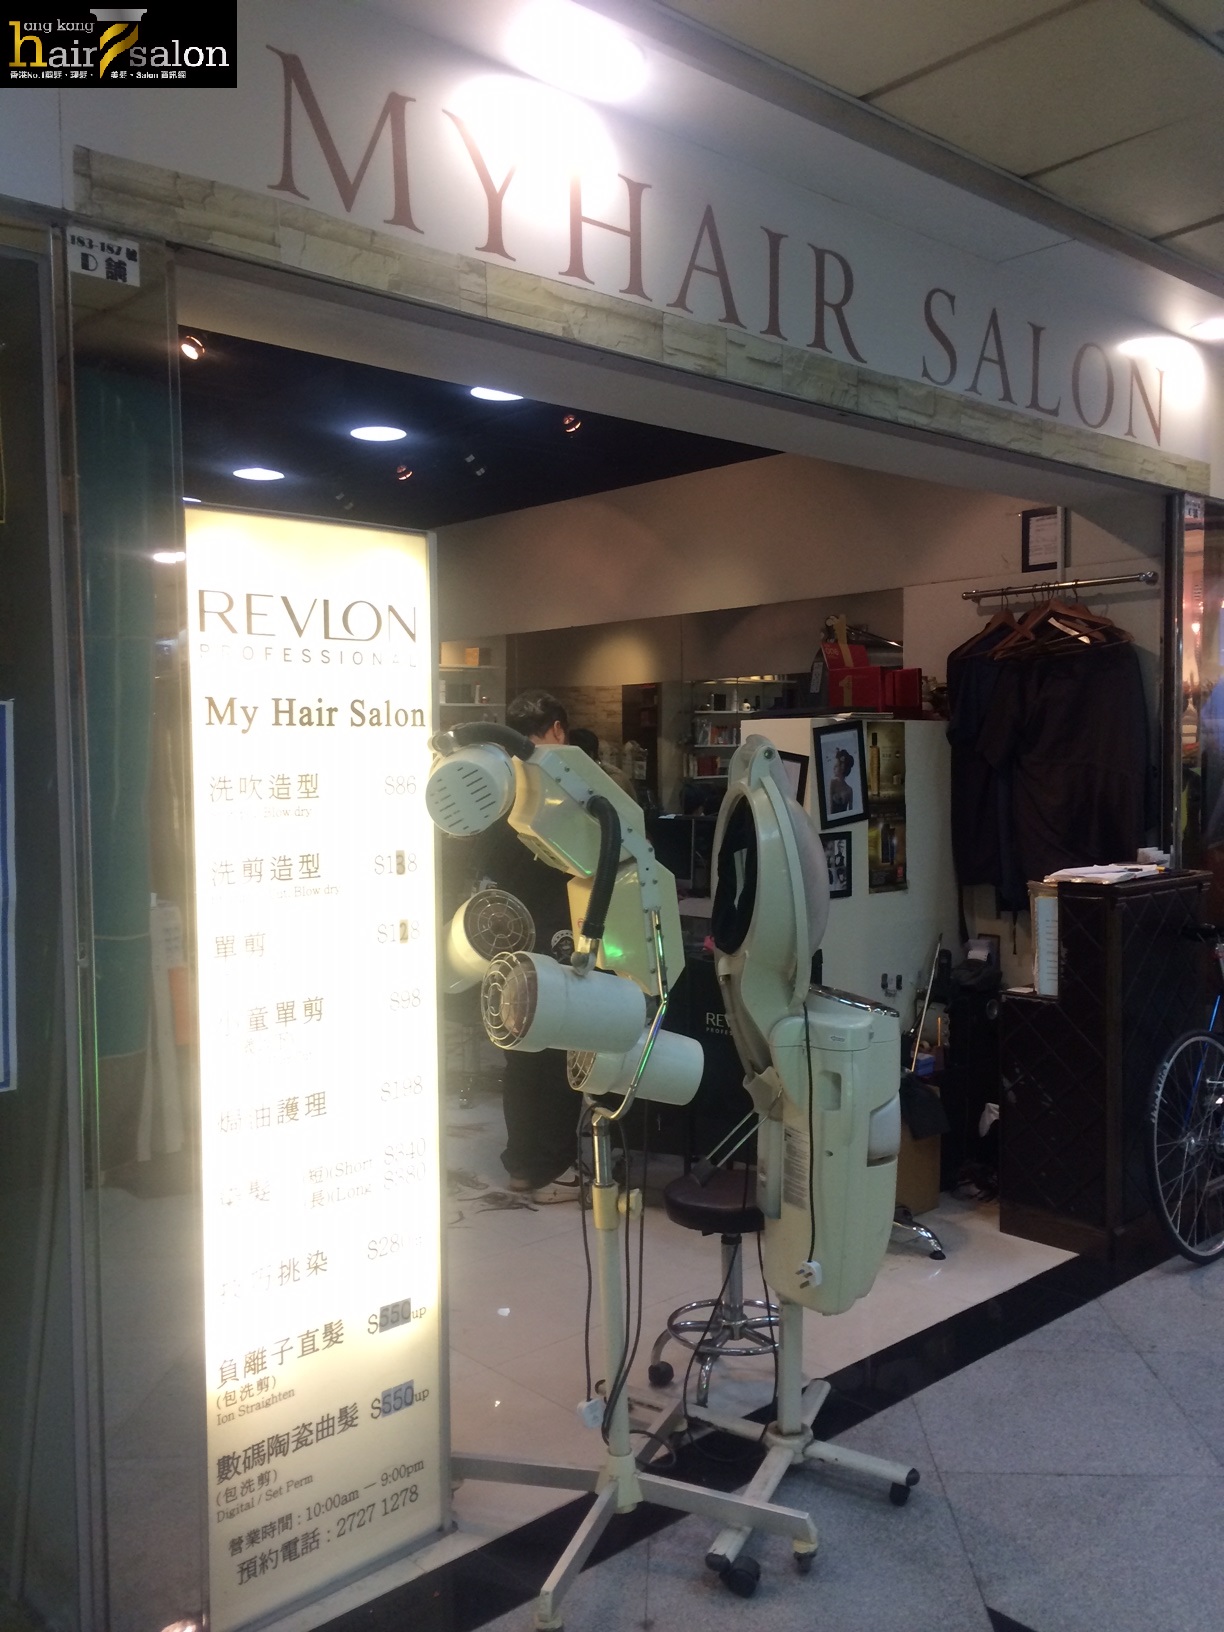 香港美髮網 HK Hair Salon 髮型屋Salon / 髮型師: My Hair Salon